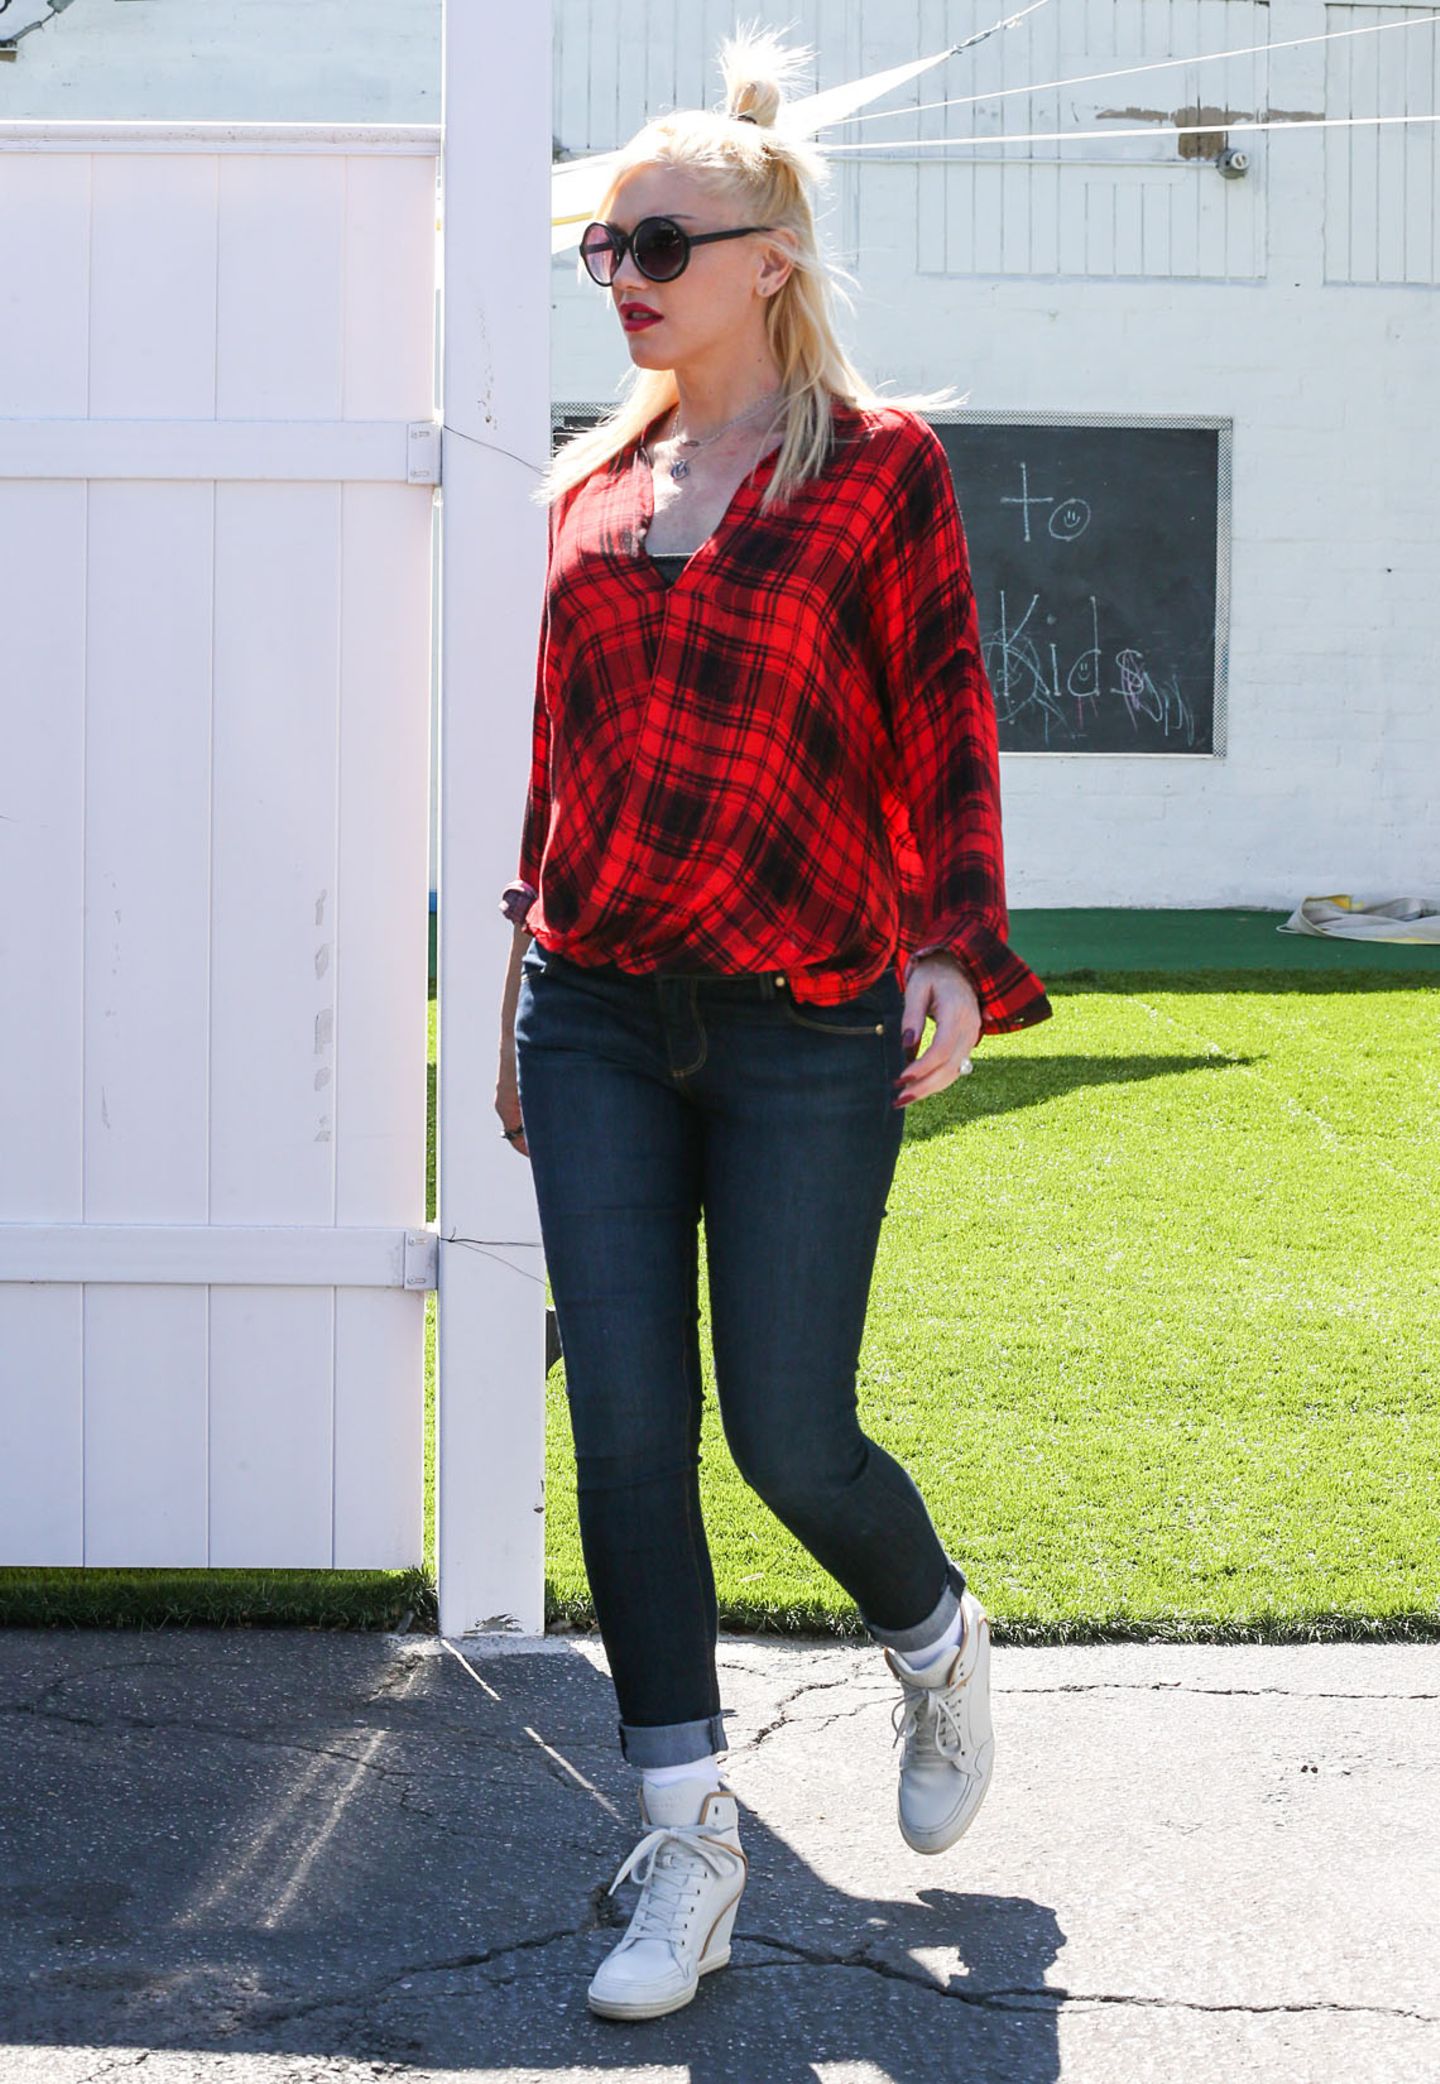 Das rote Karohemd im Wickel-Look lässt den Gwens Bauch nur erahnen. Jeans dazu und weiße Sneaker, fertig ist das sportliche Alltagsoutfit.